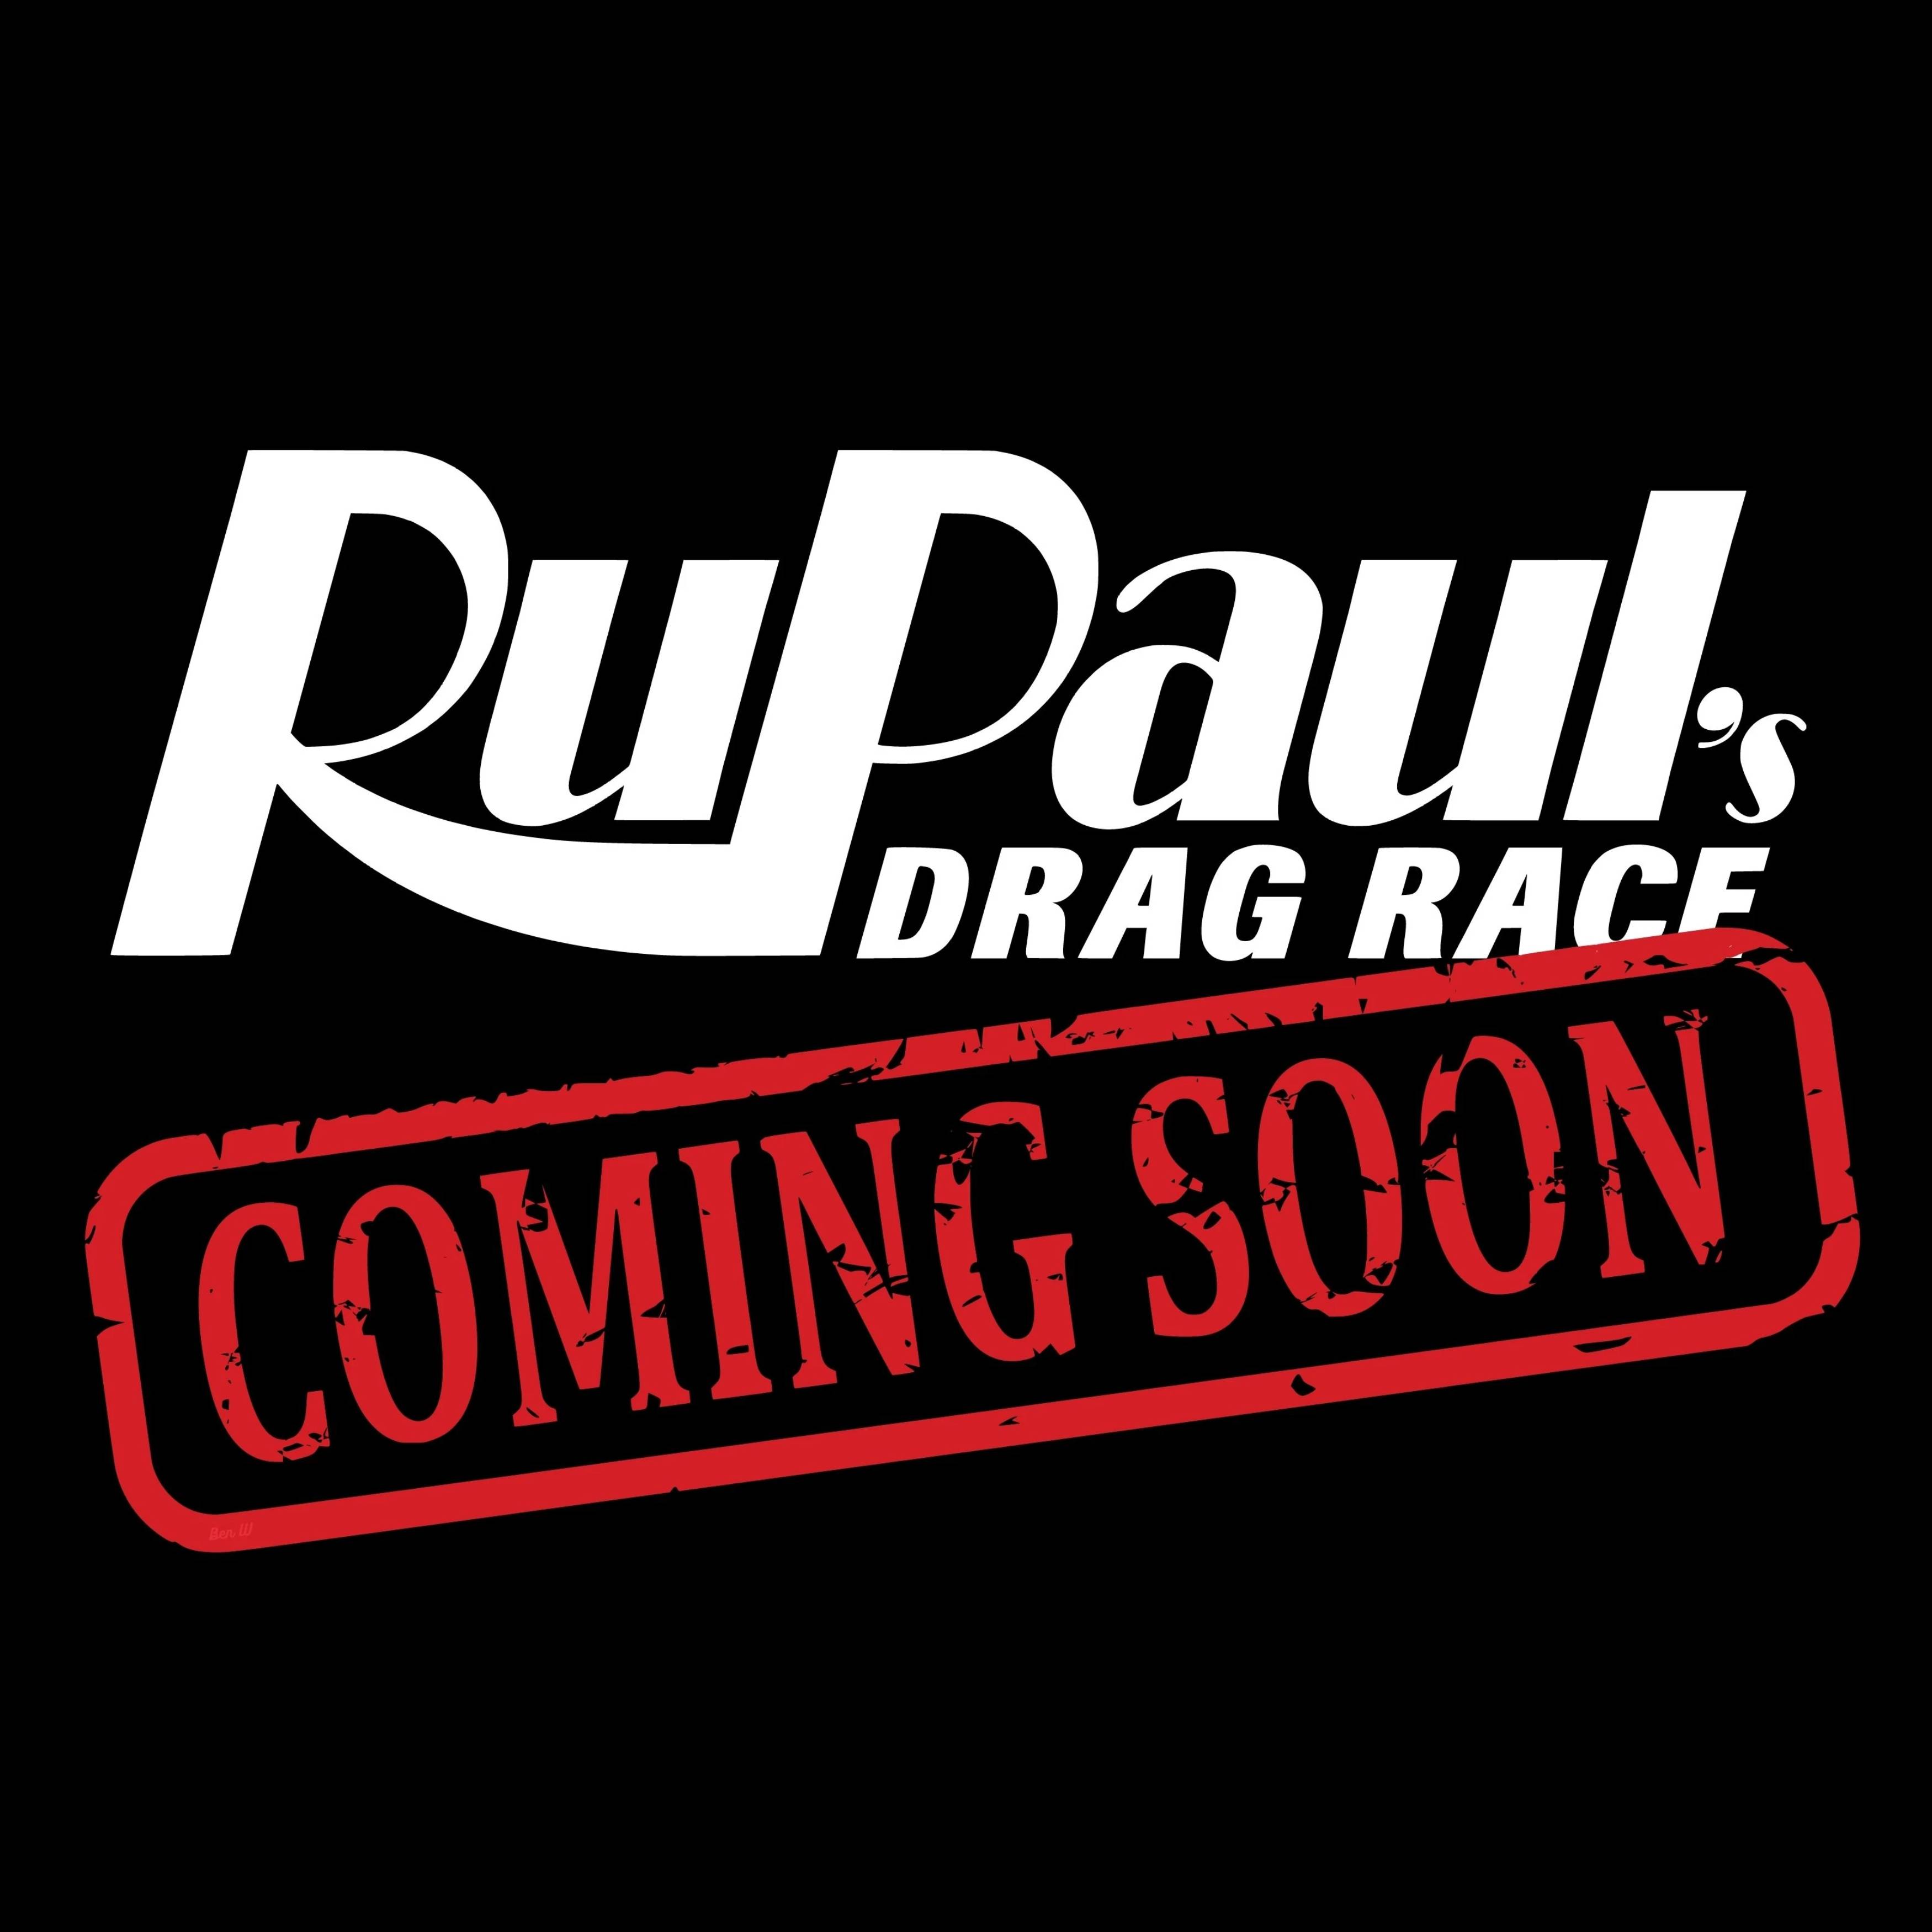 Drag Race Brasil, RuPaul's Drag Race Wiki